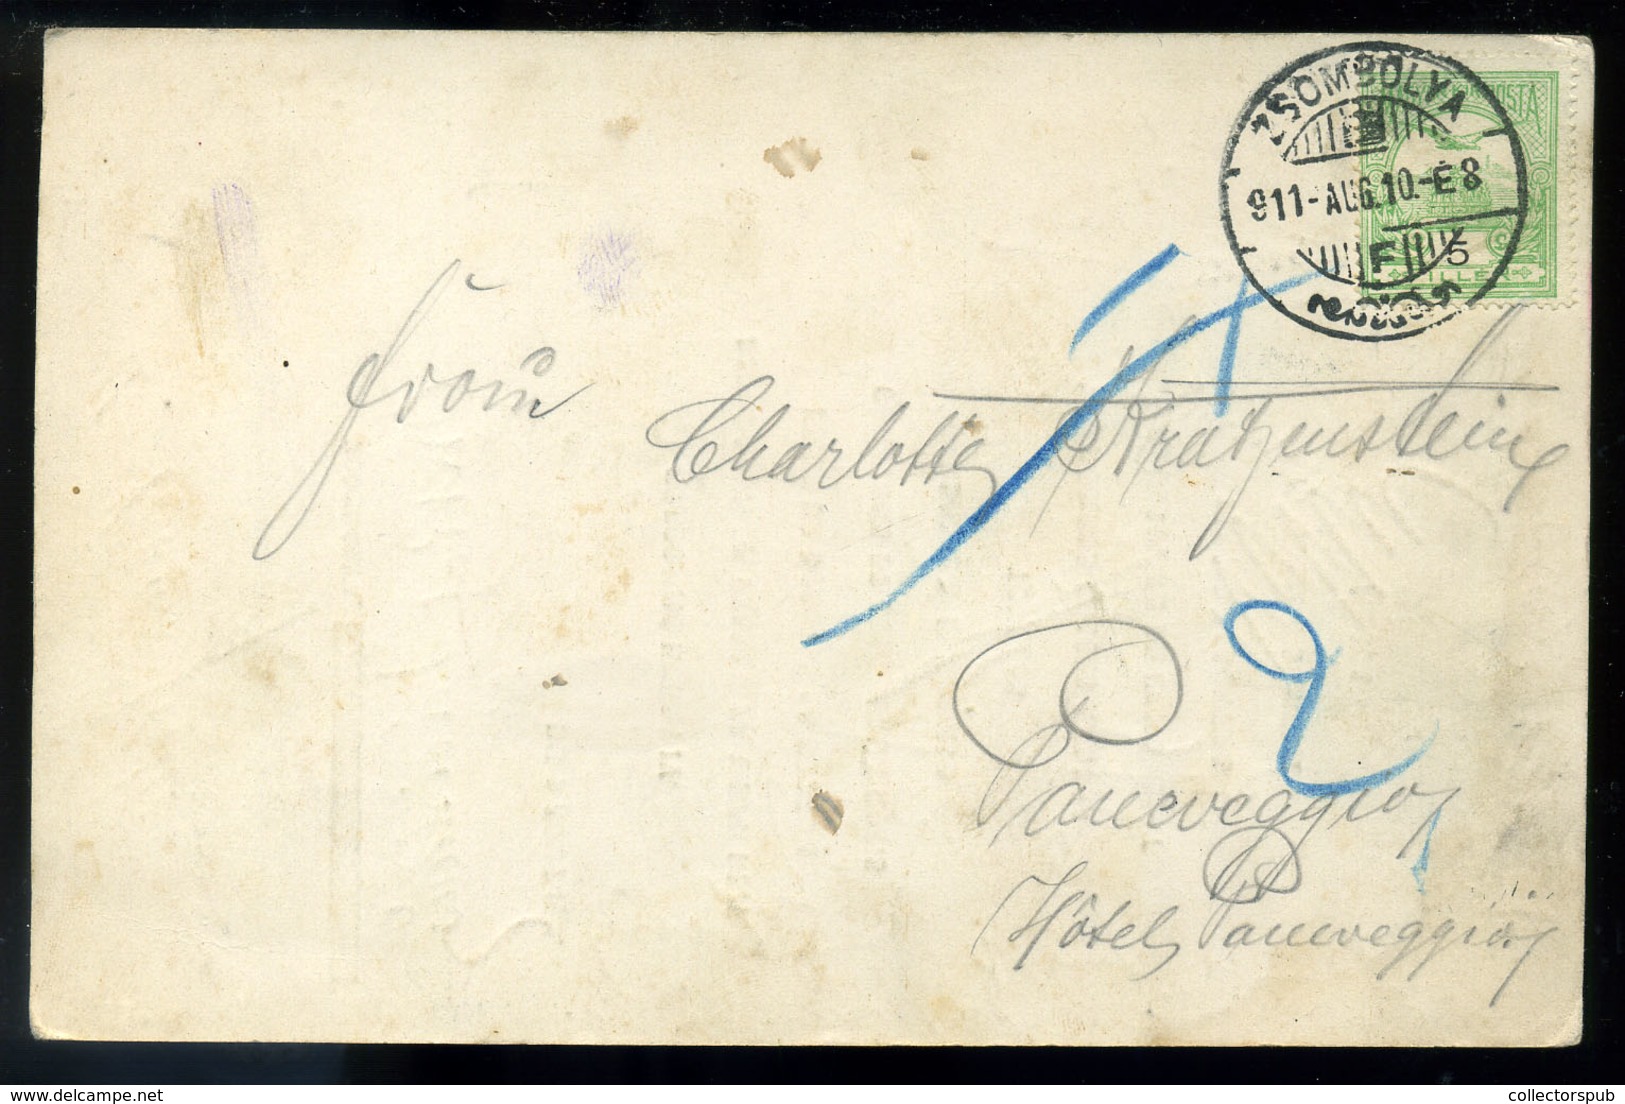 MENÜKÁRTYA , 1911. Zsombolya, Postázott Litho Kártya, Aláírásokkal, Jemelika Ferenc  /  MENU CARD 1911 Mailed Litho Card - Zonder Classificatie